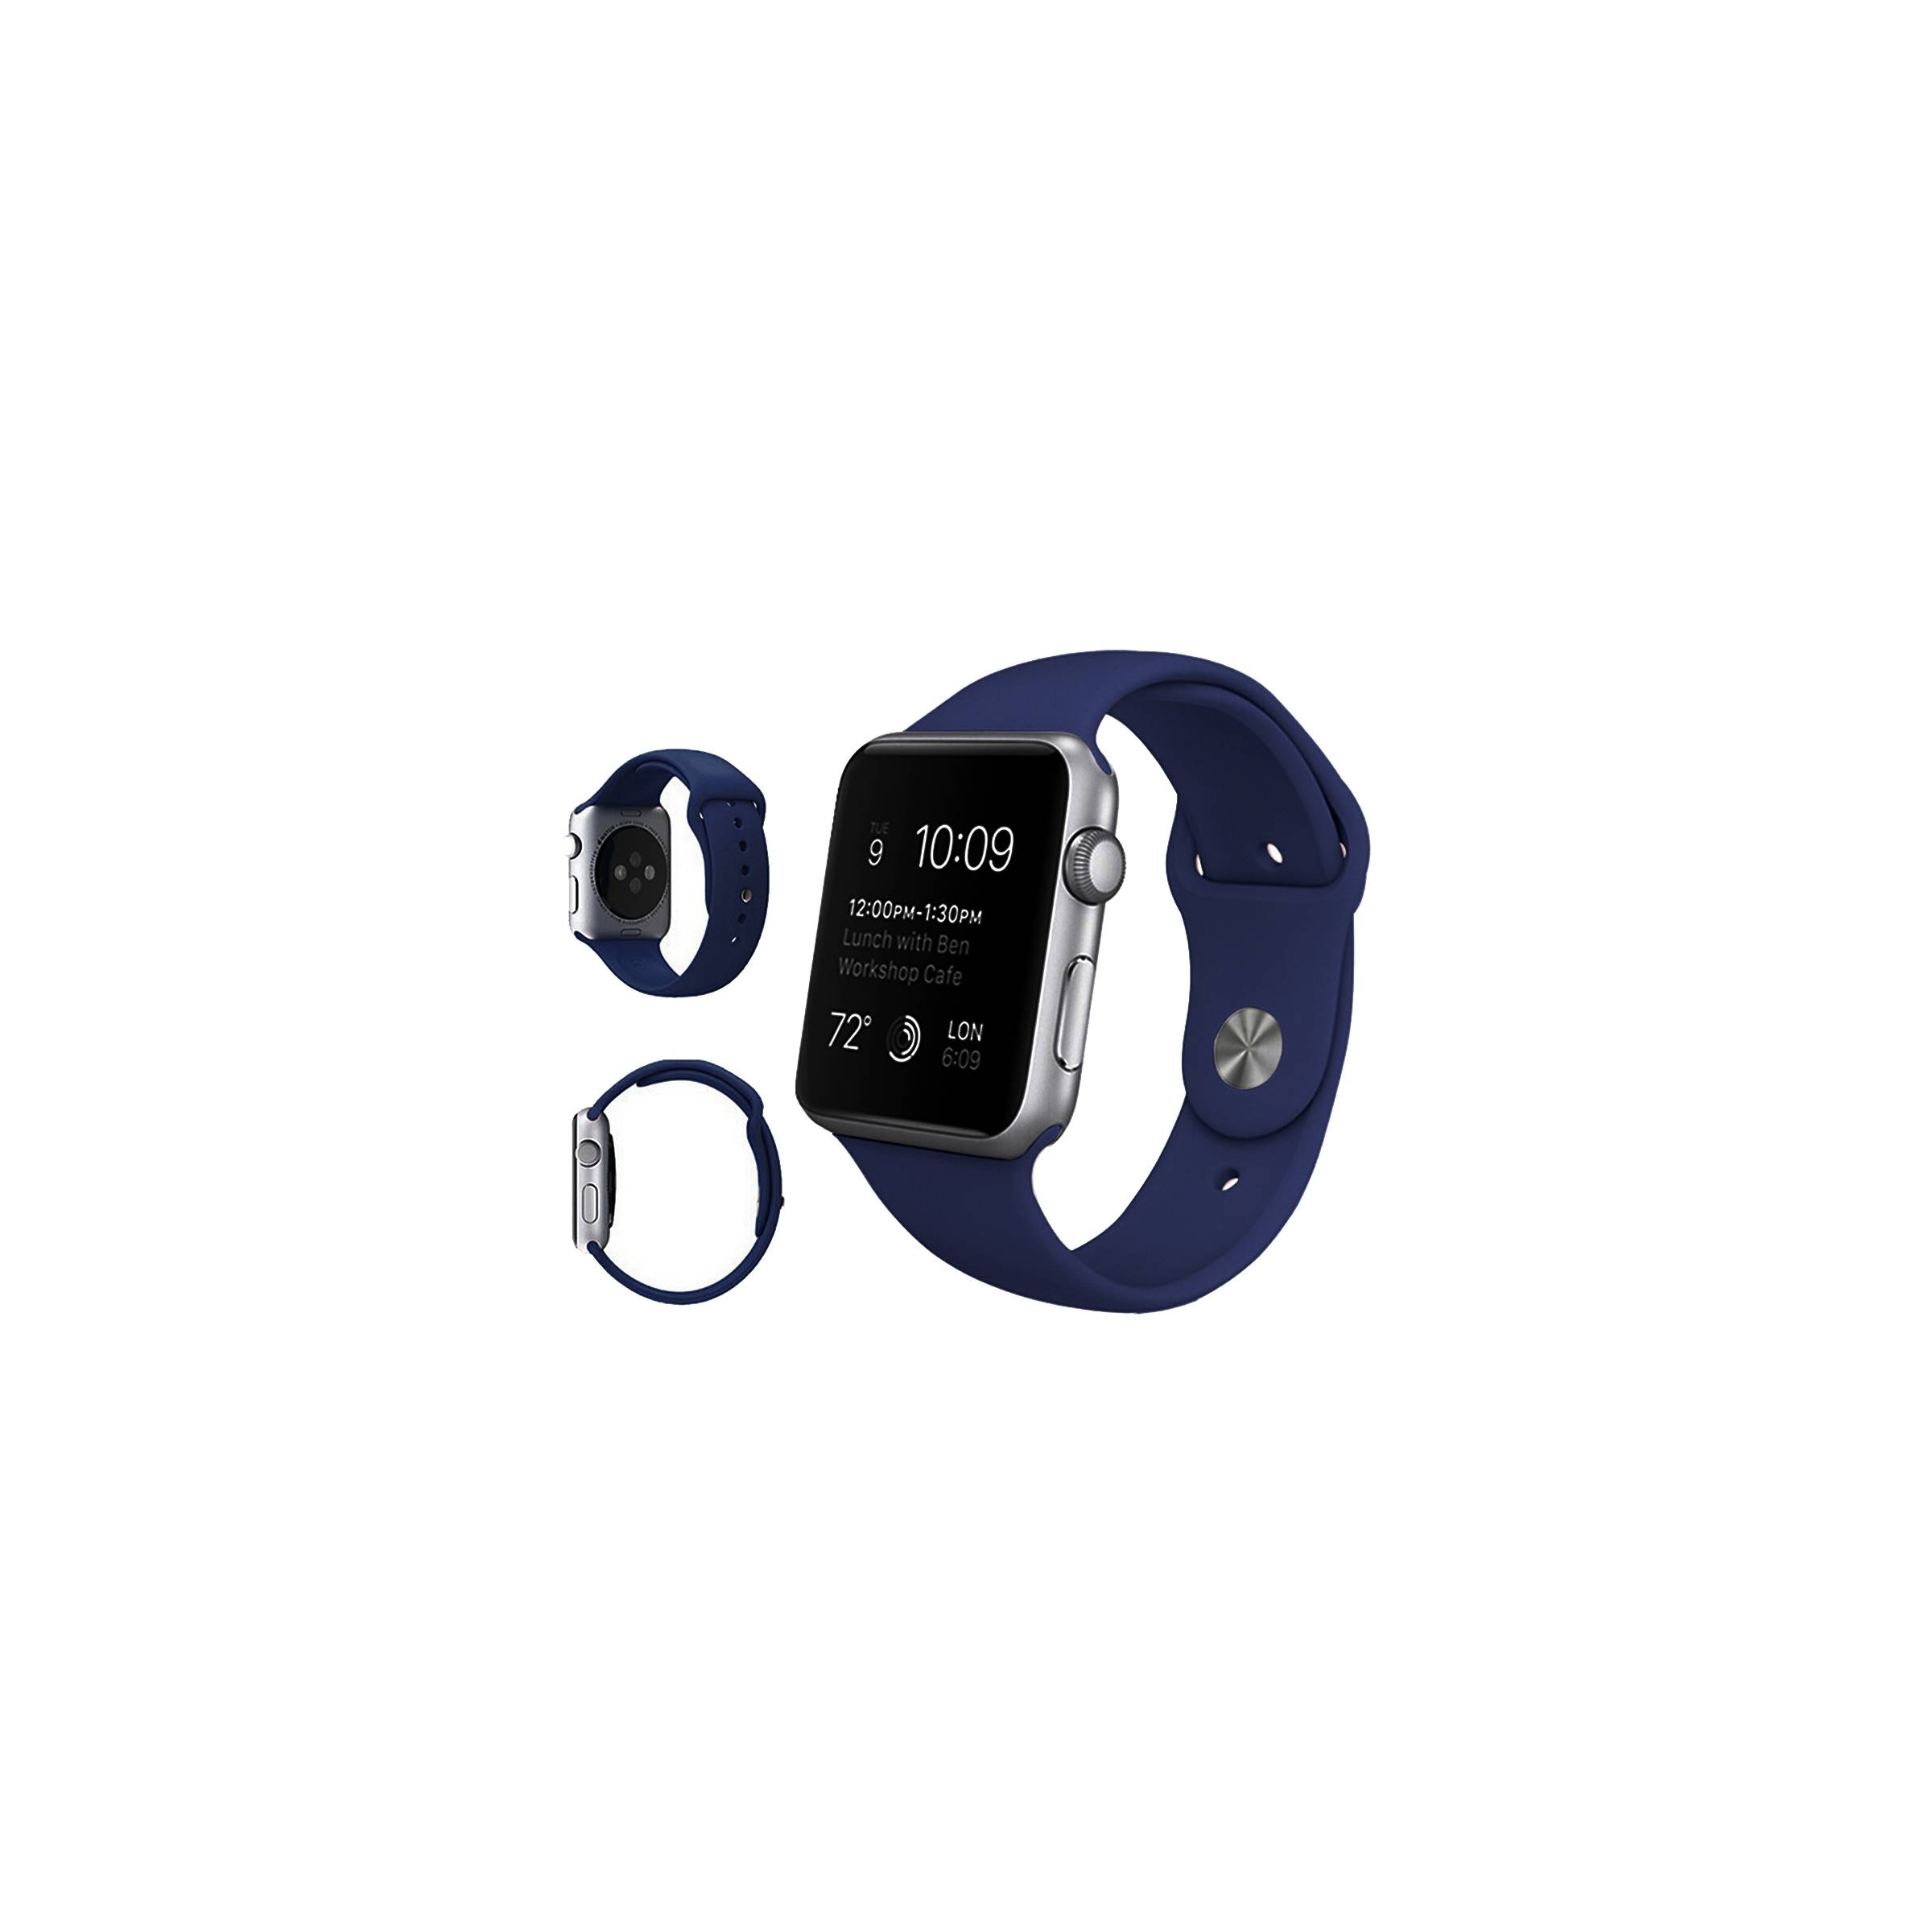 Bilde av Apple Watch Silikon Stropp- Flere Vakre Farger, Størrelse 42mm, Farge Blå